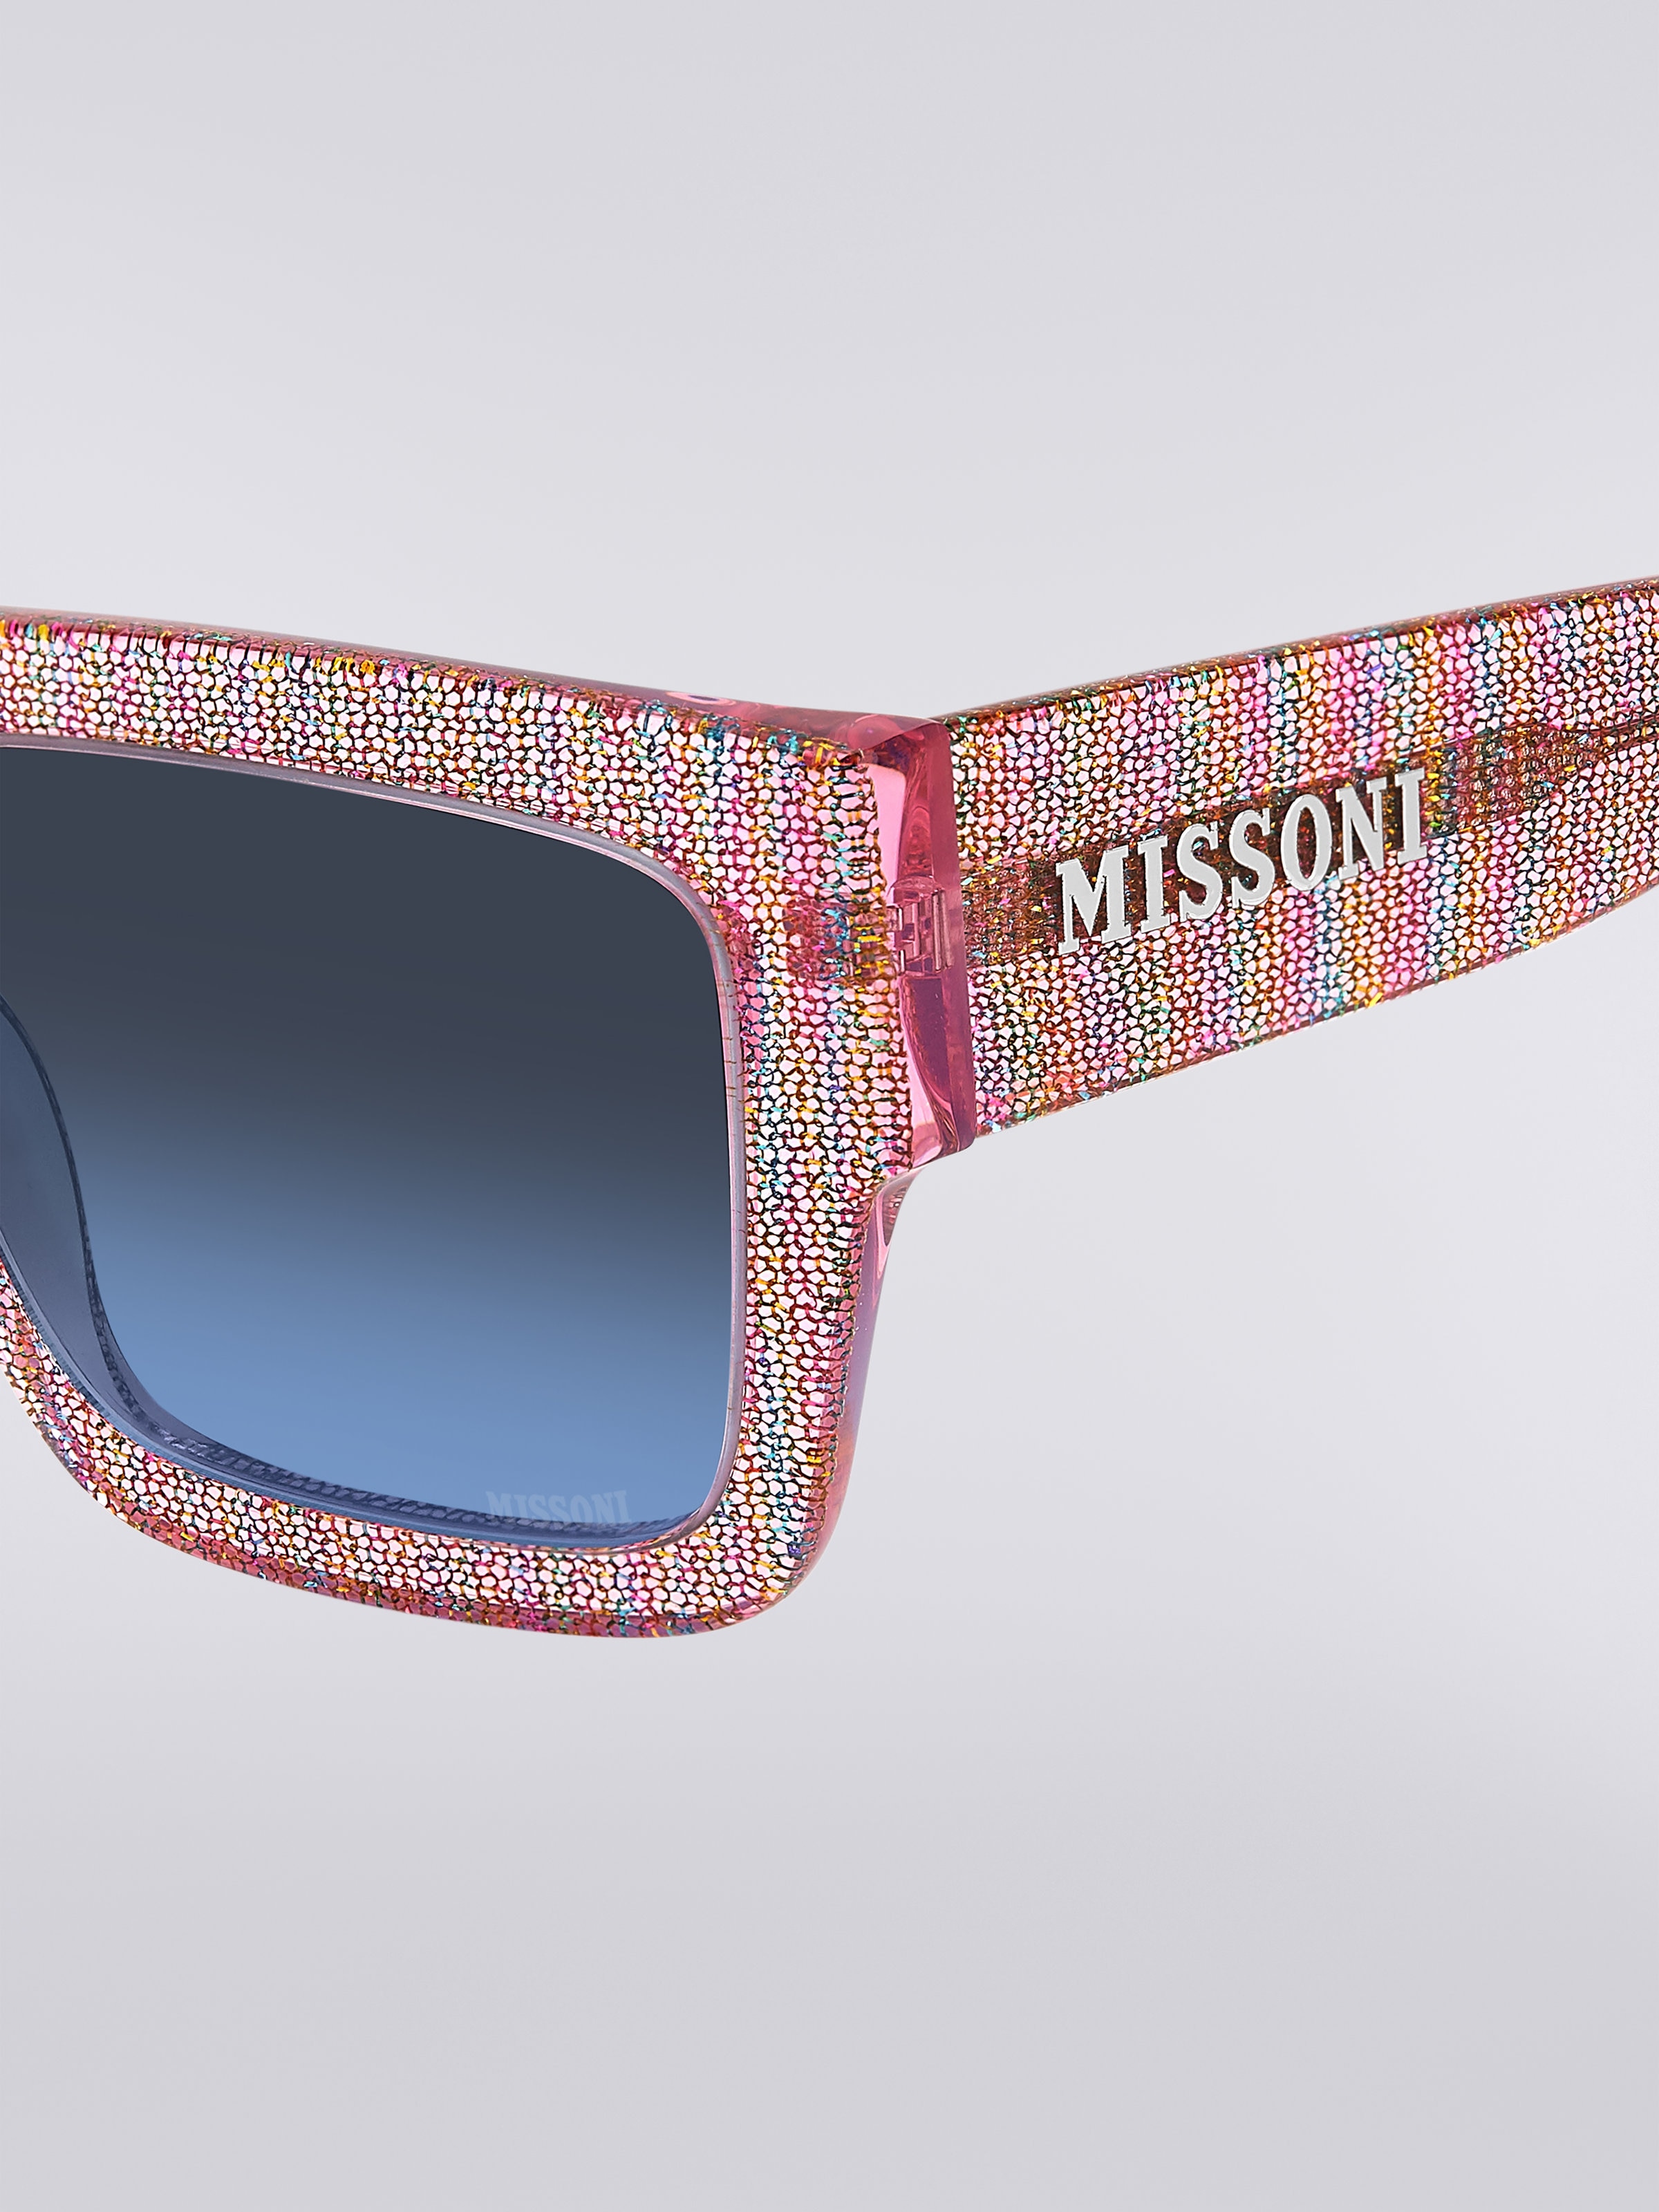 Missoni Dna Acetate Sunglasses, Multicoloured  - 3